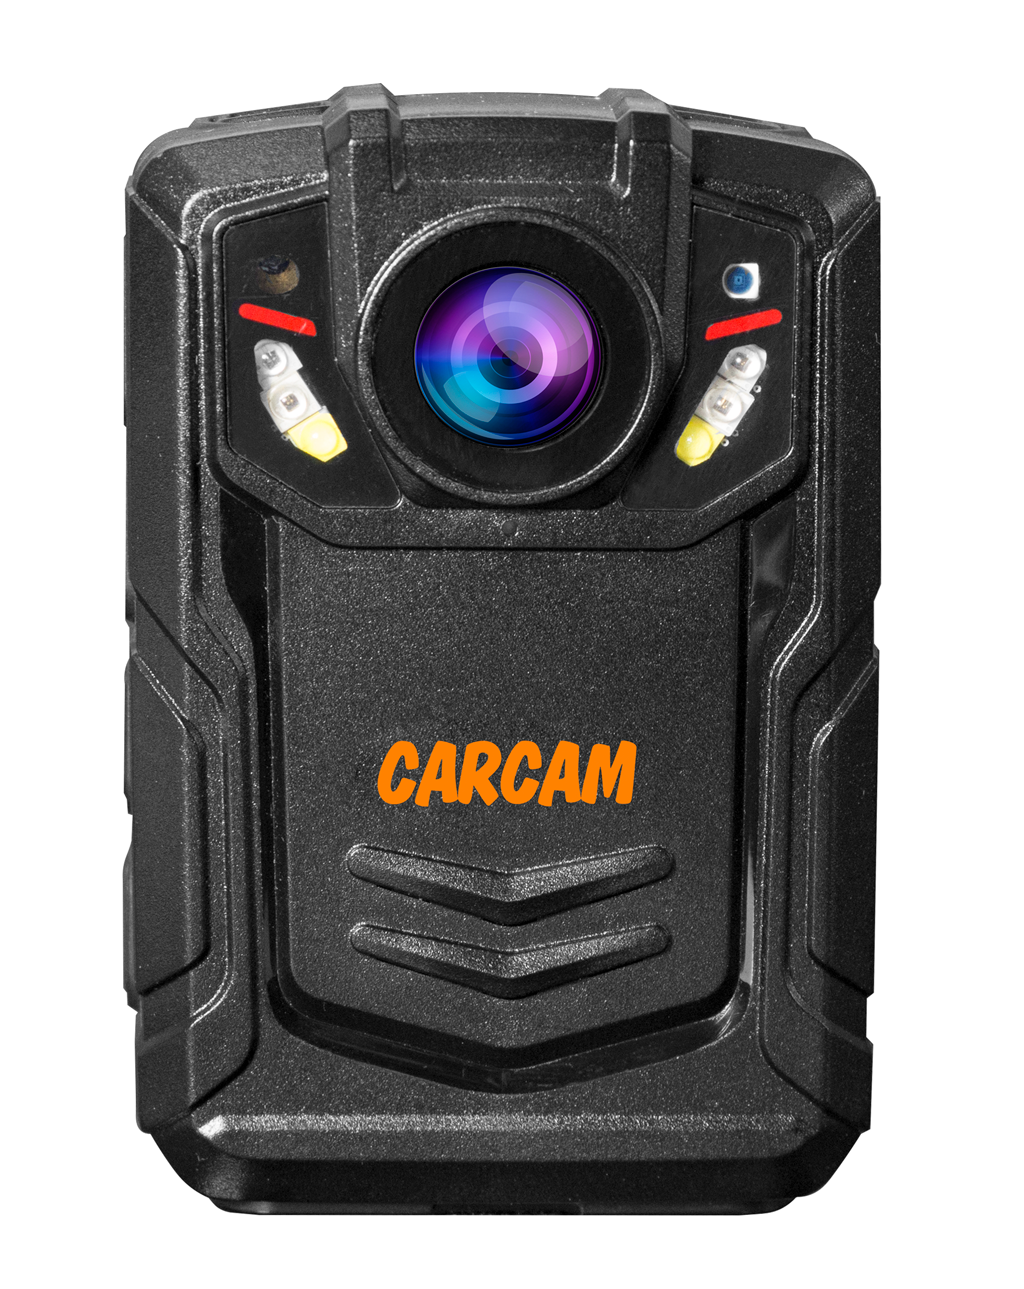 Персональный Quad HD видеорегистратор  CARCAM COMBAT 2S/4G 32GB персональный full hd видеорегистратор с функцией стабилизации изображения carcam combat 2s pro